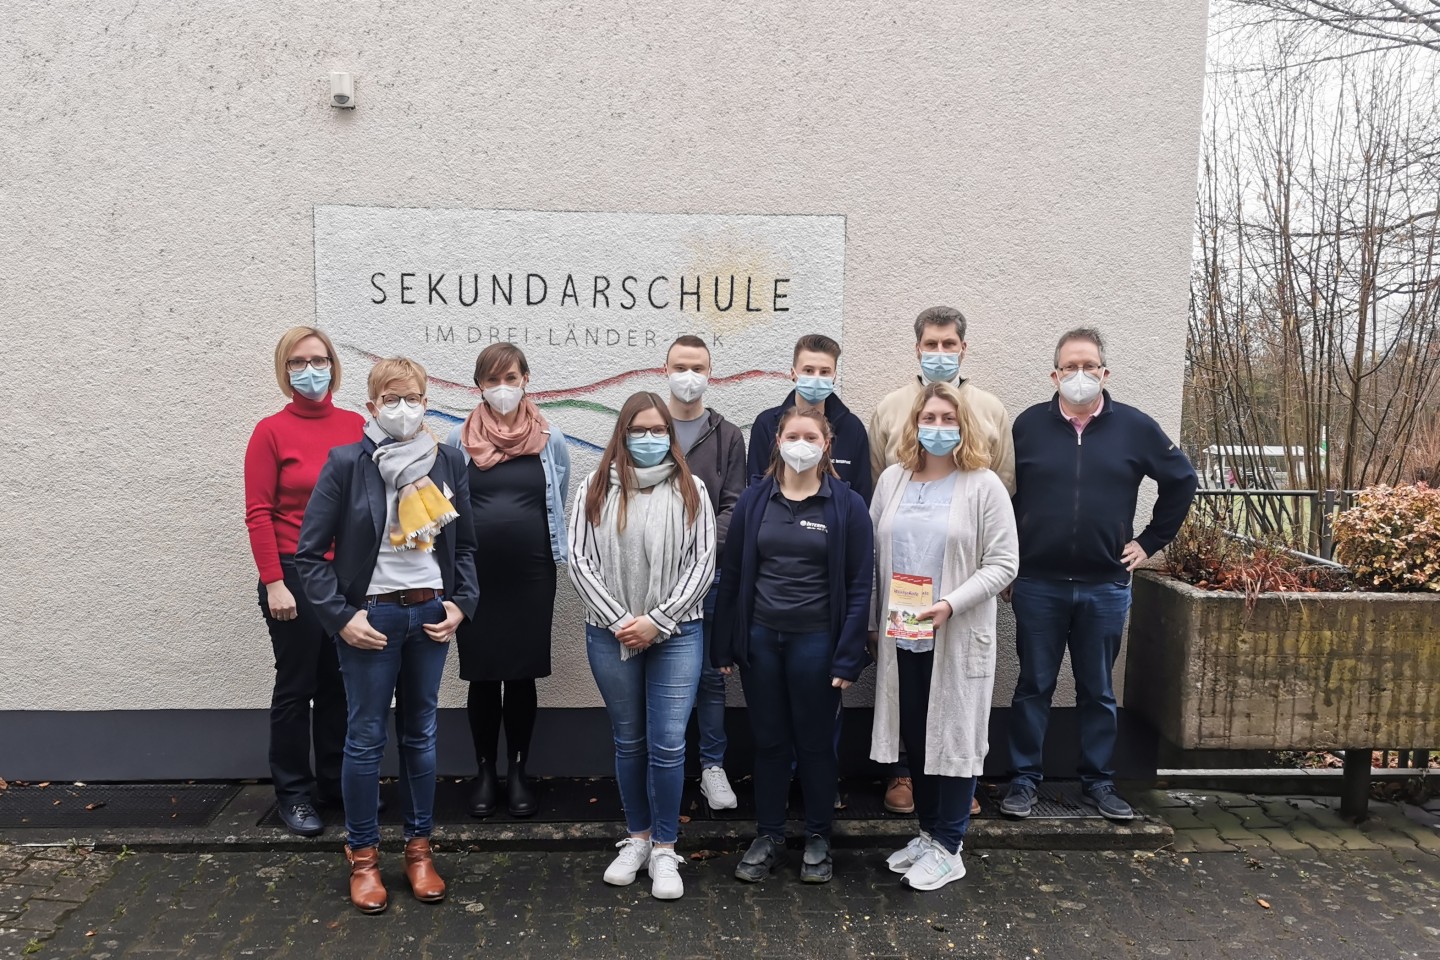 1. Foto (01 - Judith Hüsken) - Gruppenfoto mit allen Beteiligten - Schule im Dreiländereck